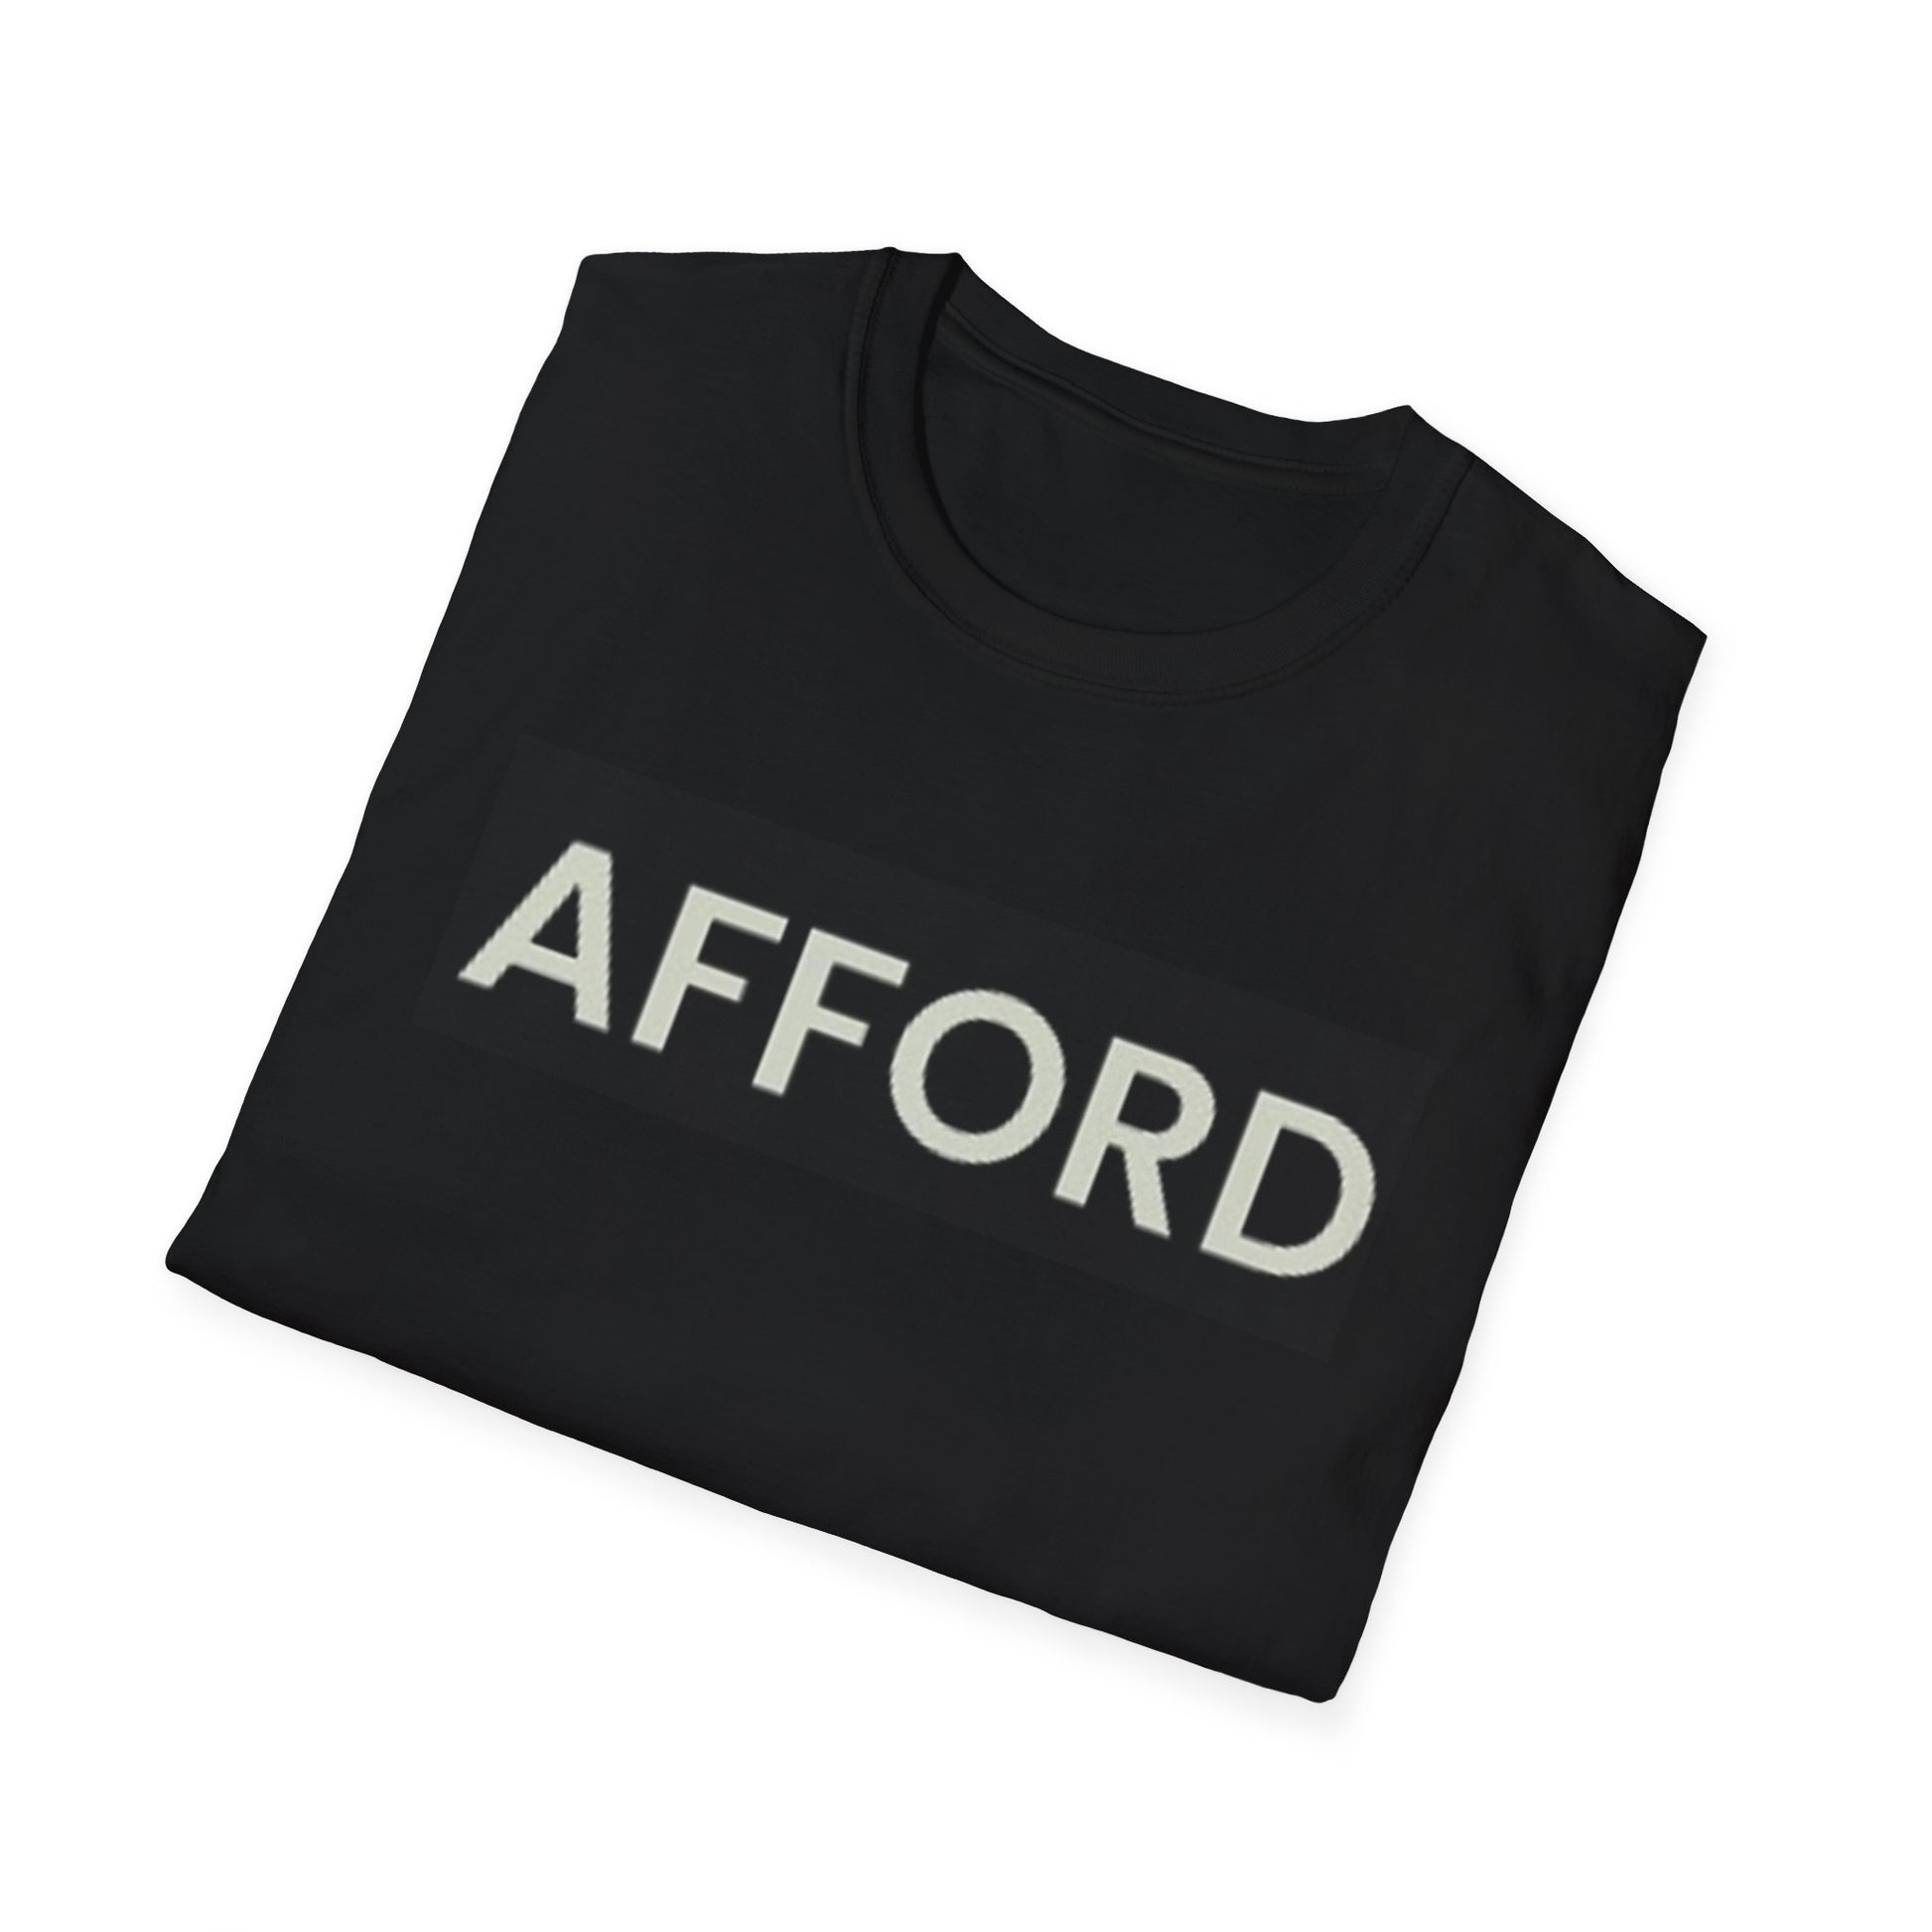 Unisex T-Shirt - AFFORD - AFFORDABLE MARKET